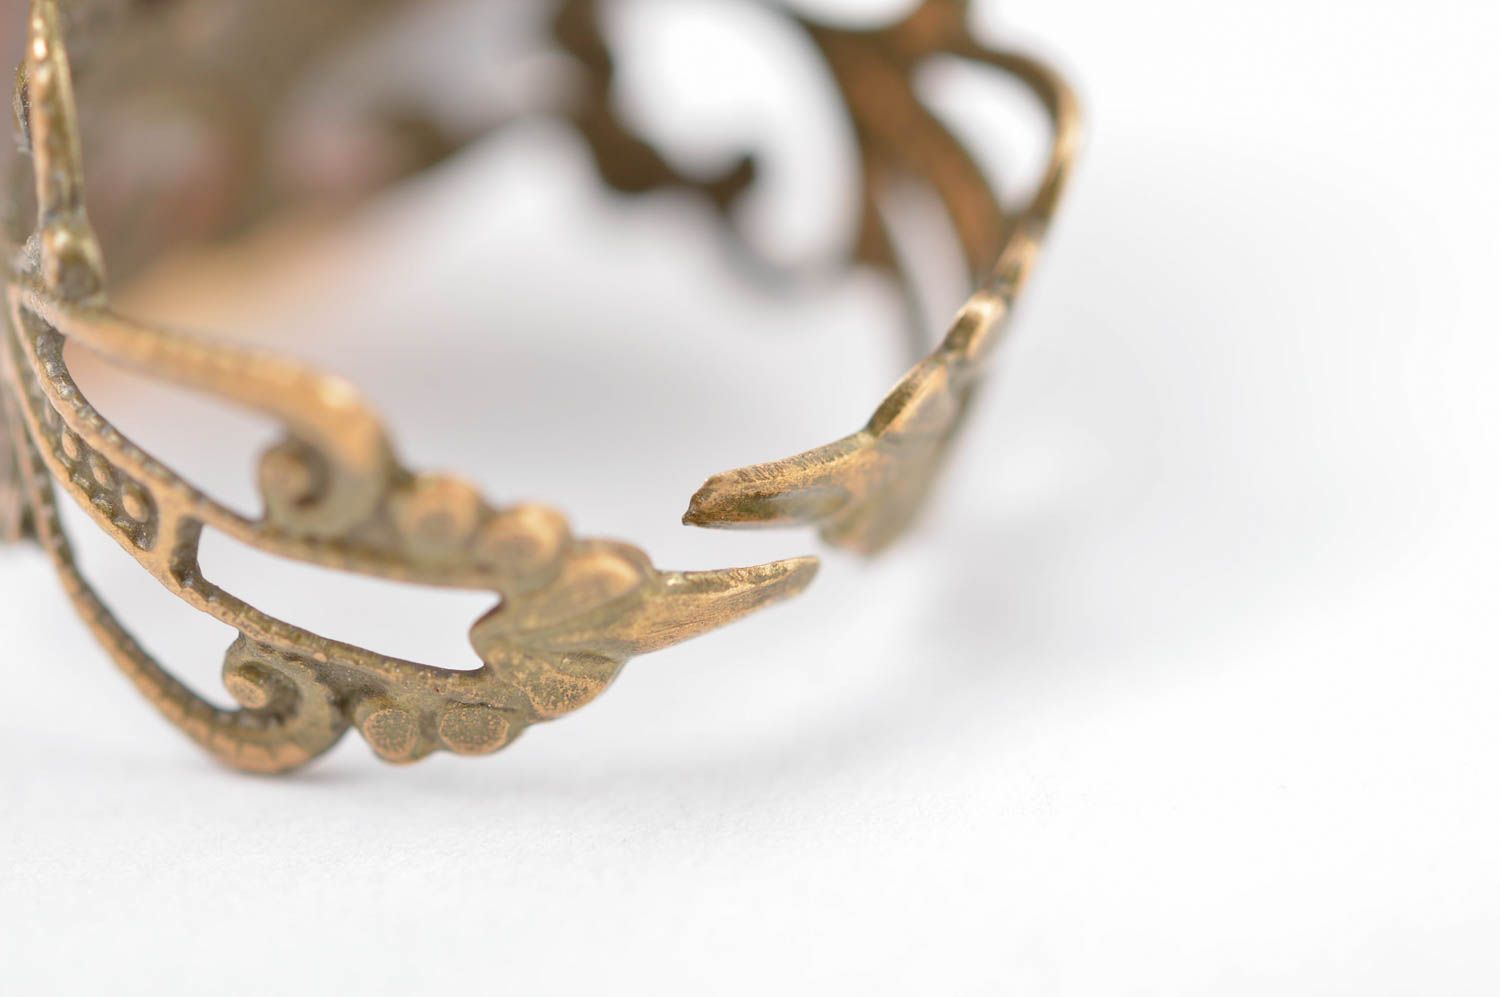 Unusual handmade glass ring handmade accessories for girls artisan jewelry photo 4